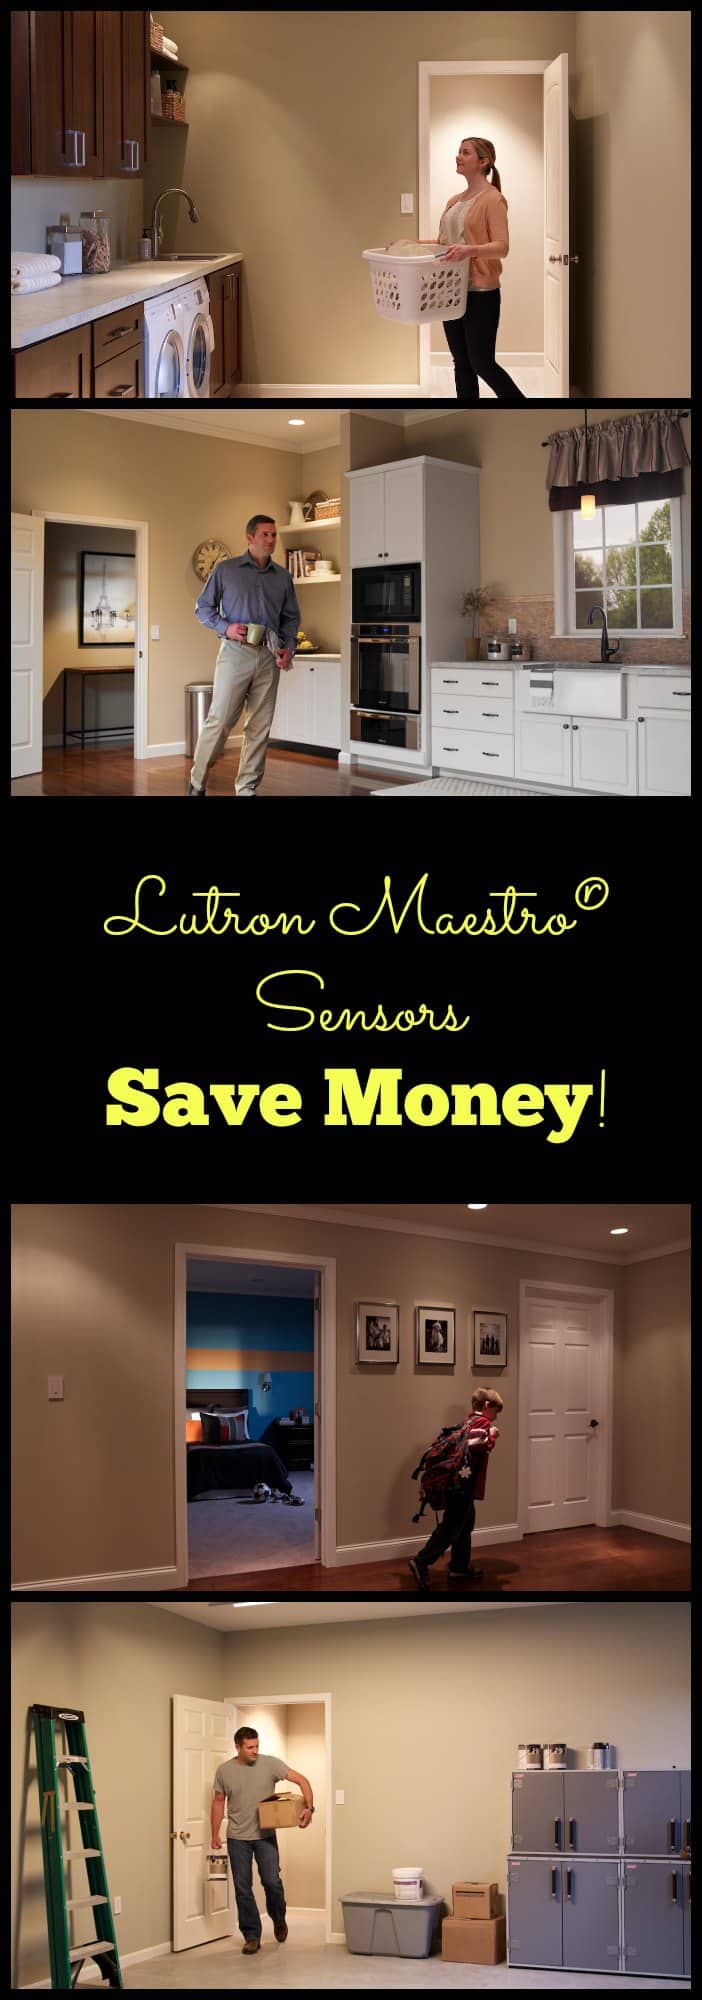 Lutron Maestro save money